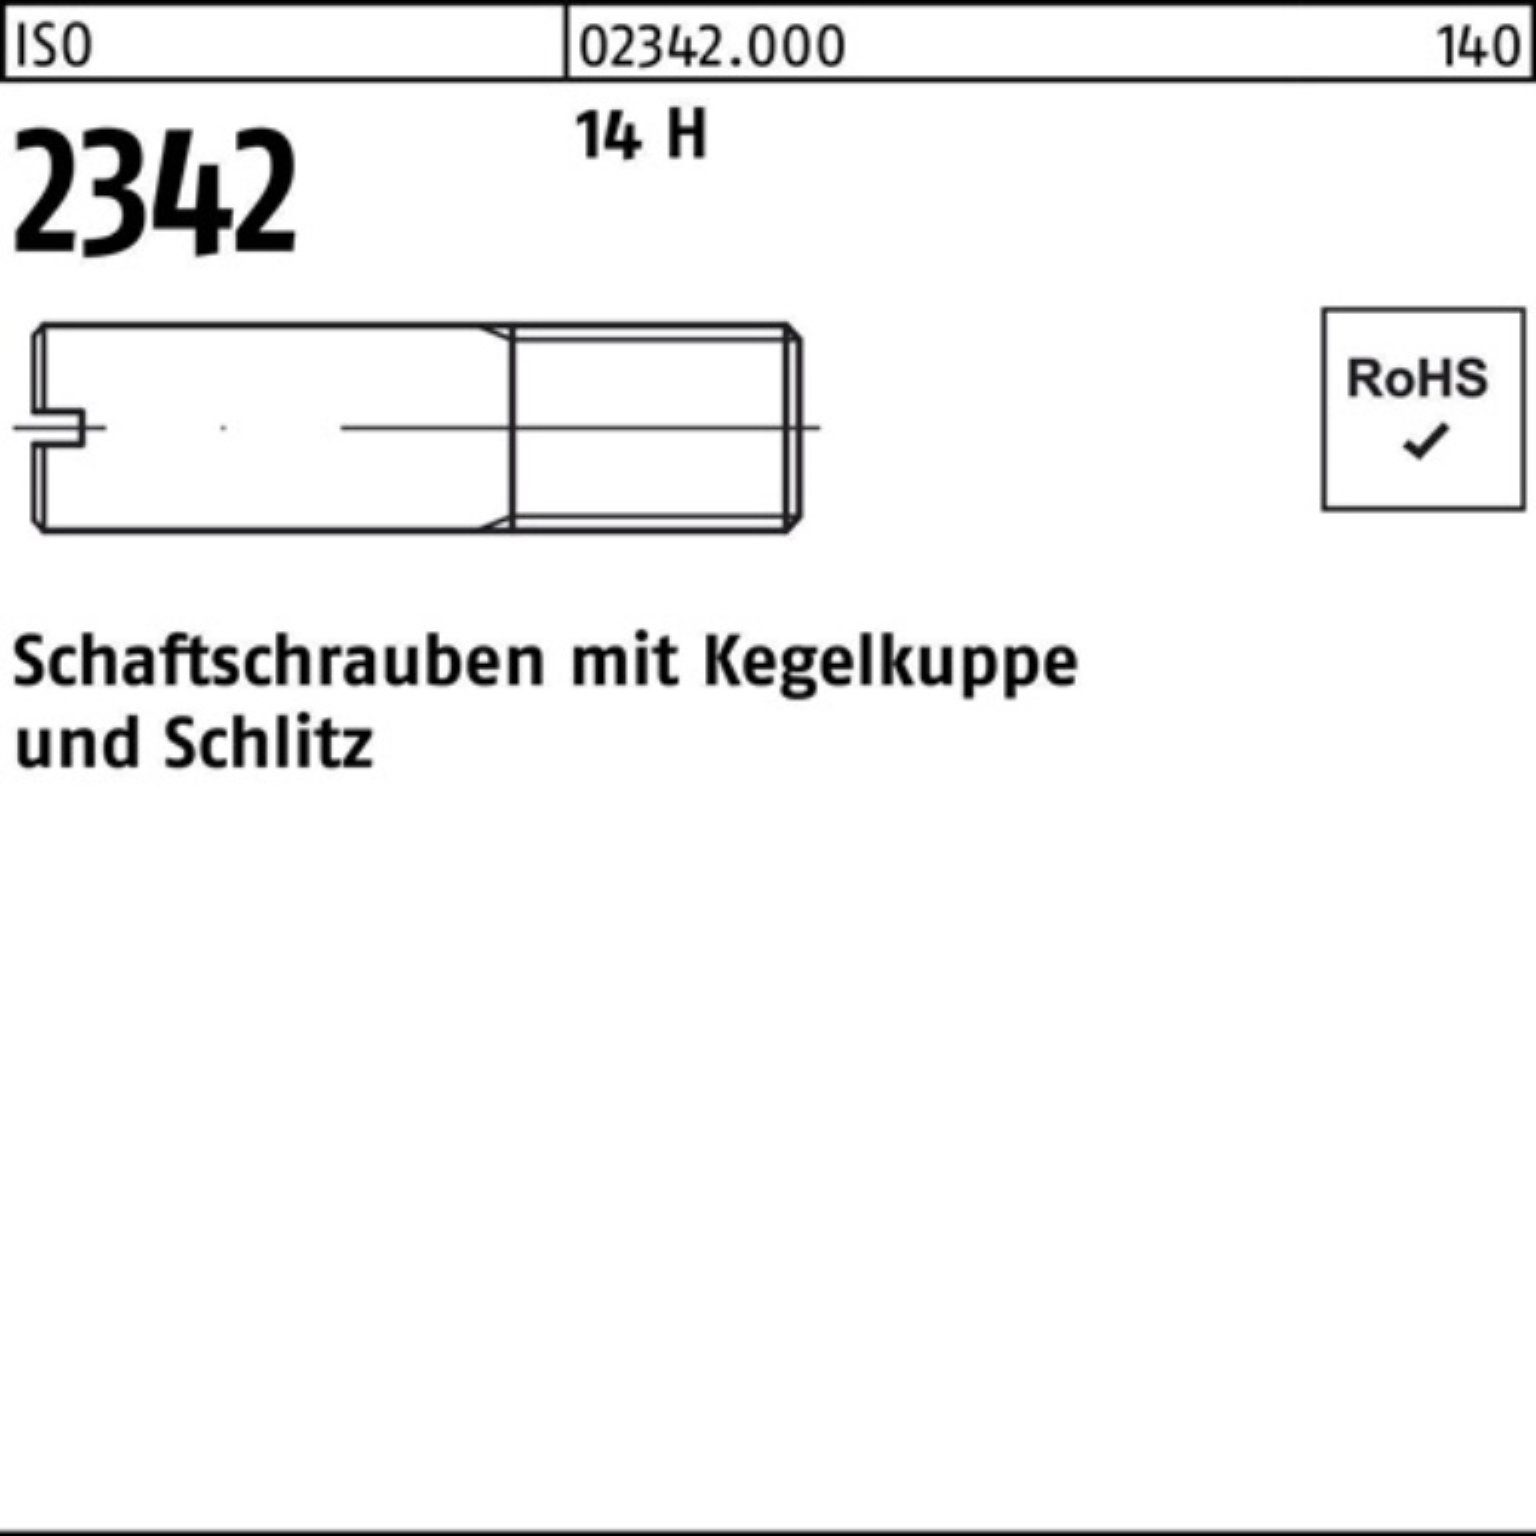 Reyher Schraube 100er Pack Schaftschraube ISO 2342 Kegelkuppe/Schlitz M5x 25 14 H 100